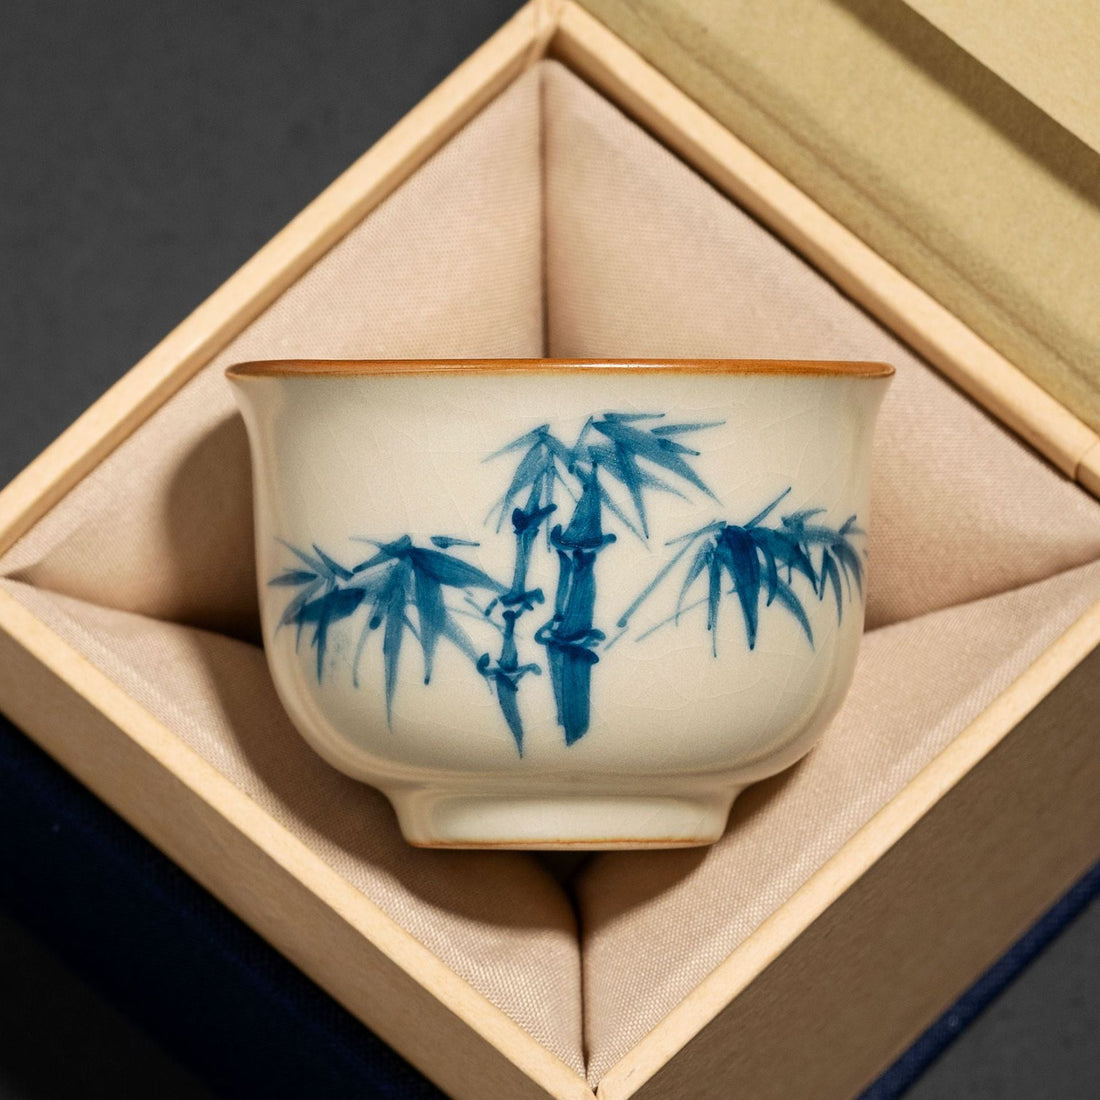 Hand-Painted Beige Ru Kiln Tea Cup